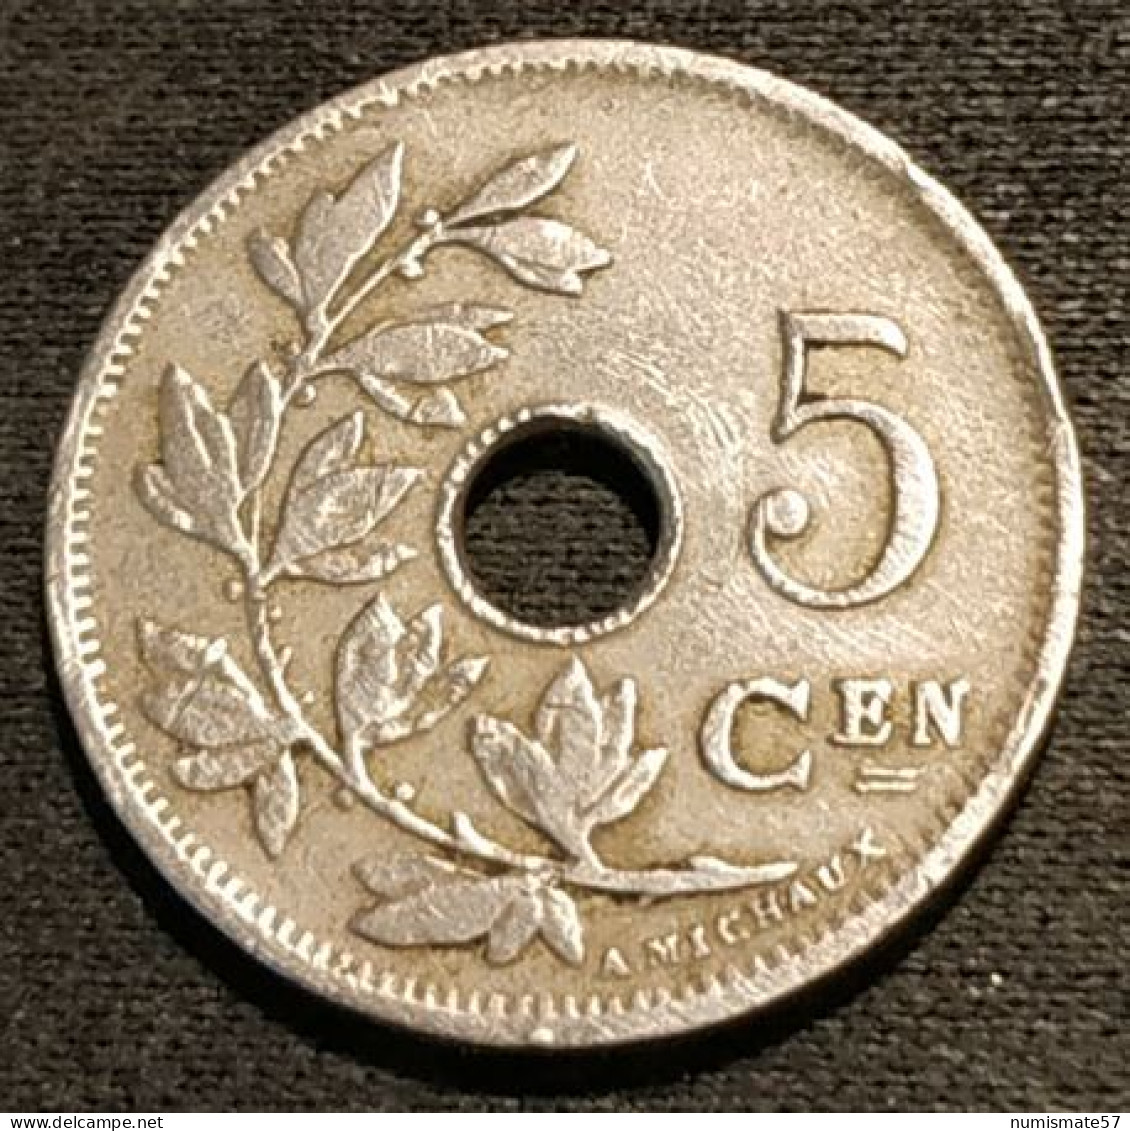 BELGIQUE - BELGIUM - 5 CENTIMES 1902 - Légende NL - Petite Date - Léopold II - Type Michaux - KM 47 - 5 Cents